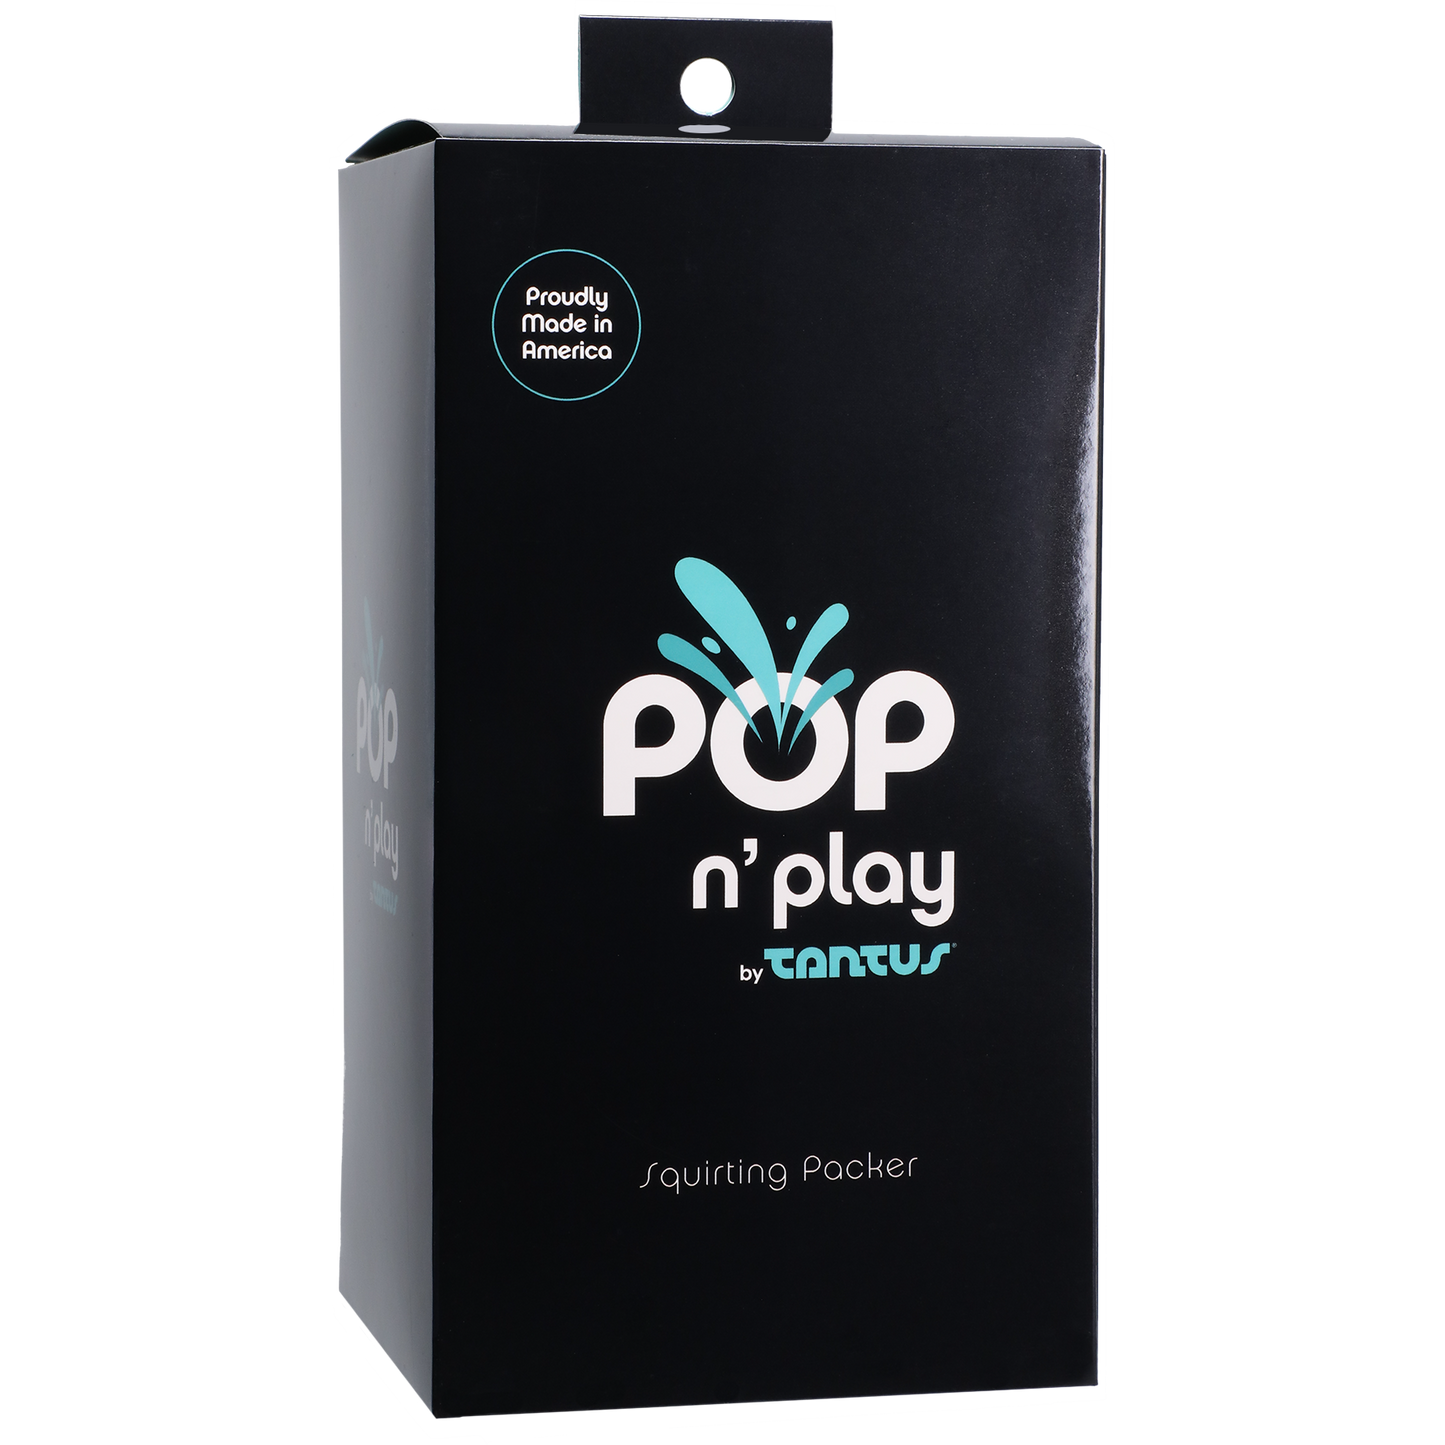 POP N' Play by TANTUS - Squirting Packer Honey